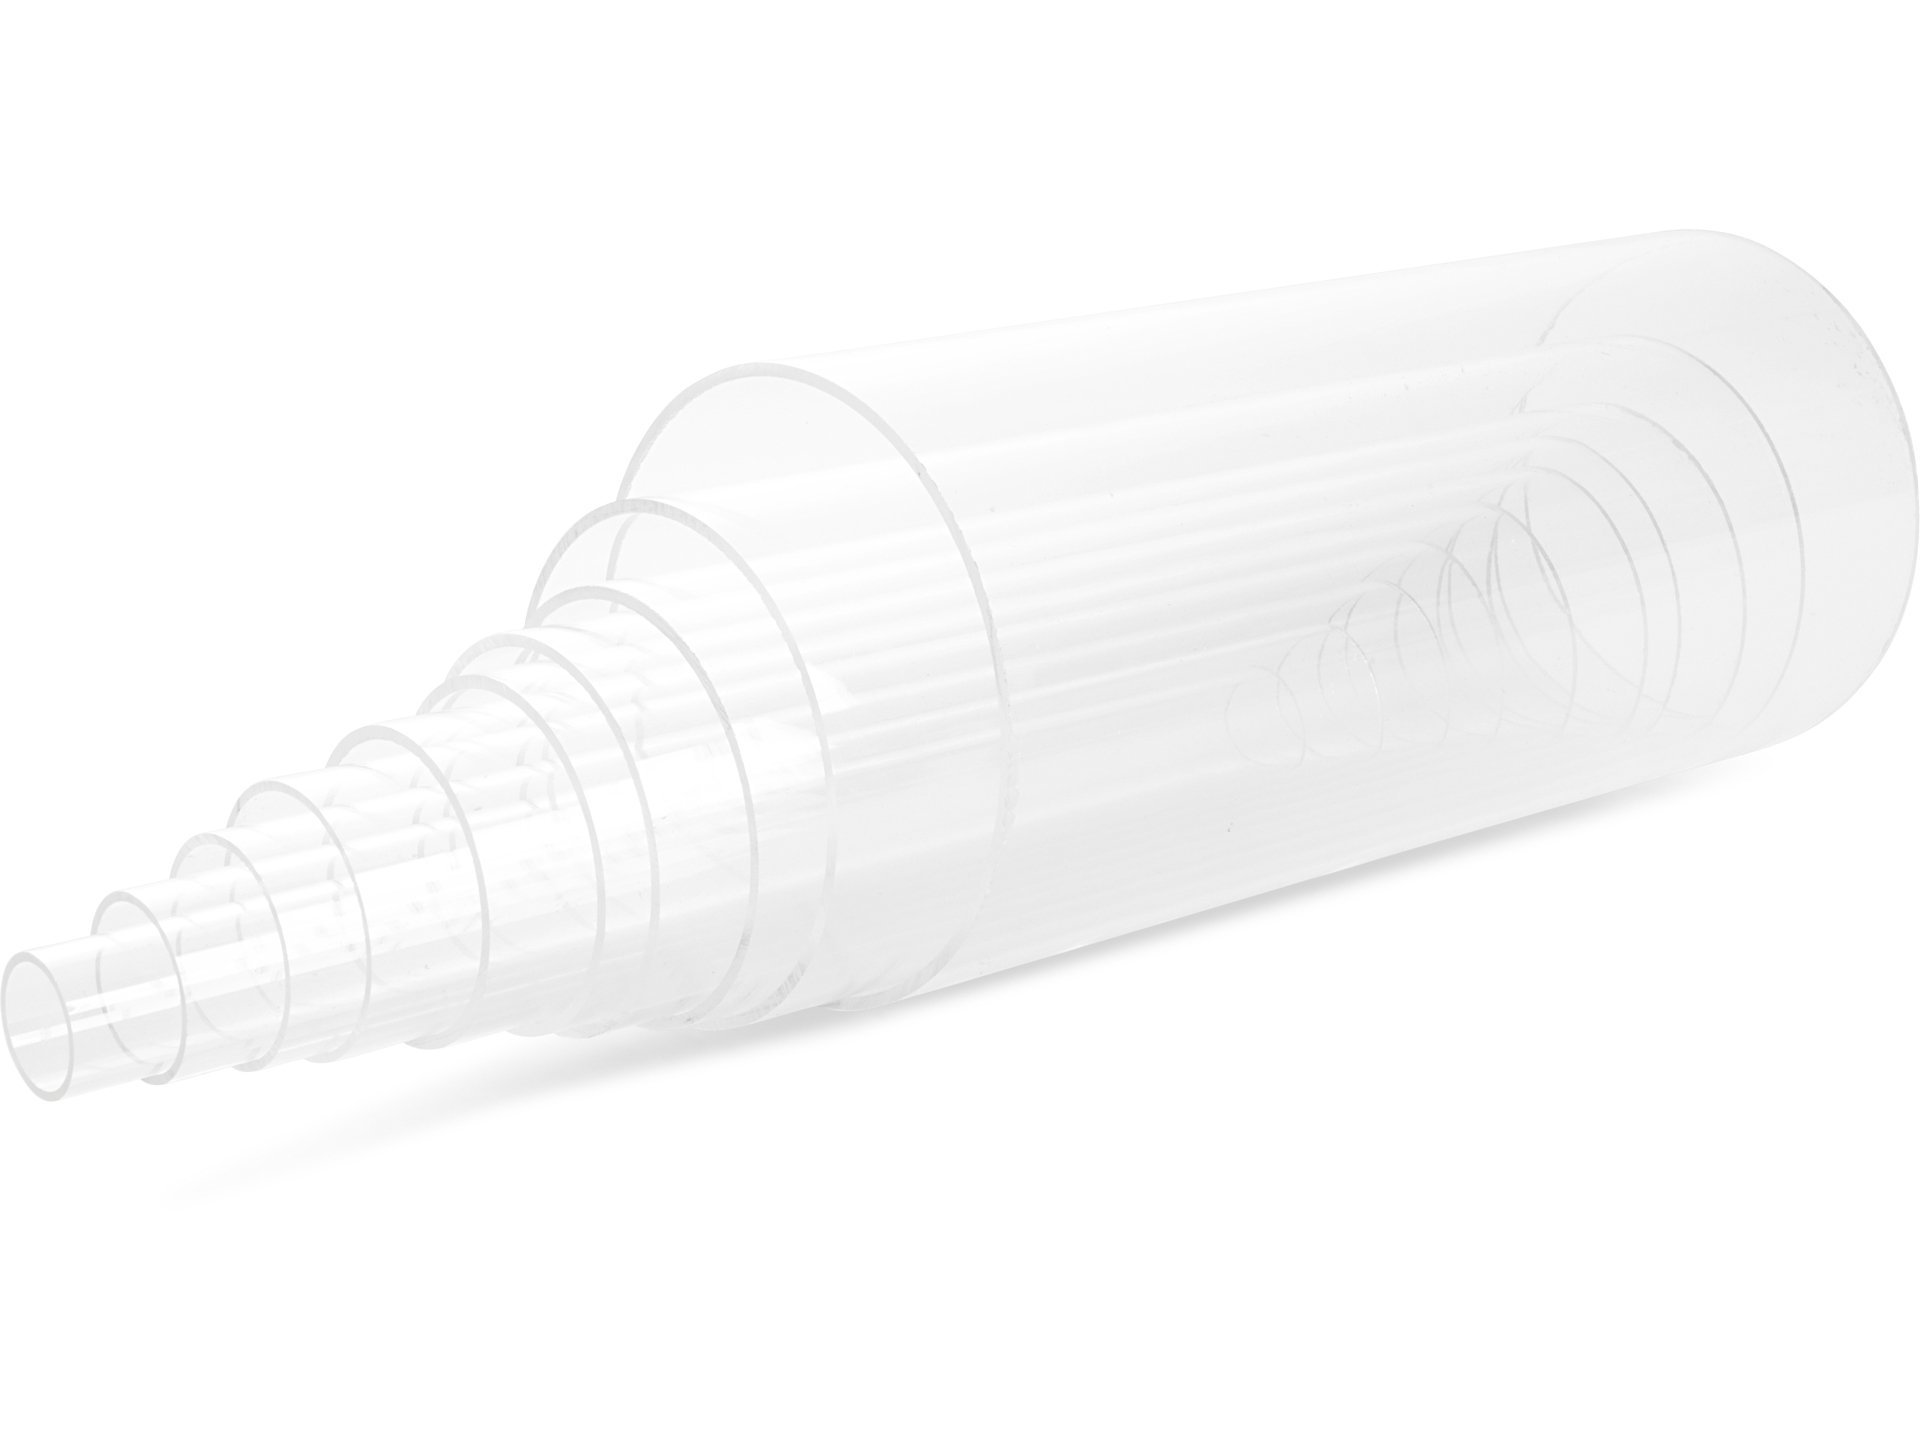 Tubo quadrato acrilico trasparente trasparente al 100% vergine,prezzo basso  Tubo quadrato acrilico trasparente trasparente al 100% vergine acquisti